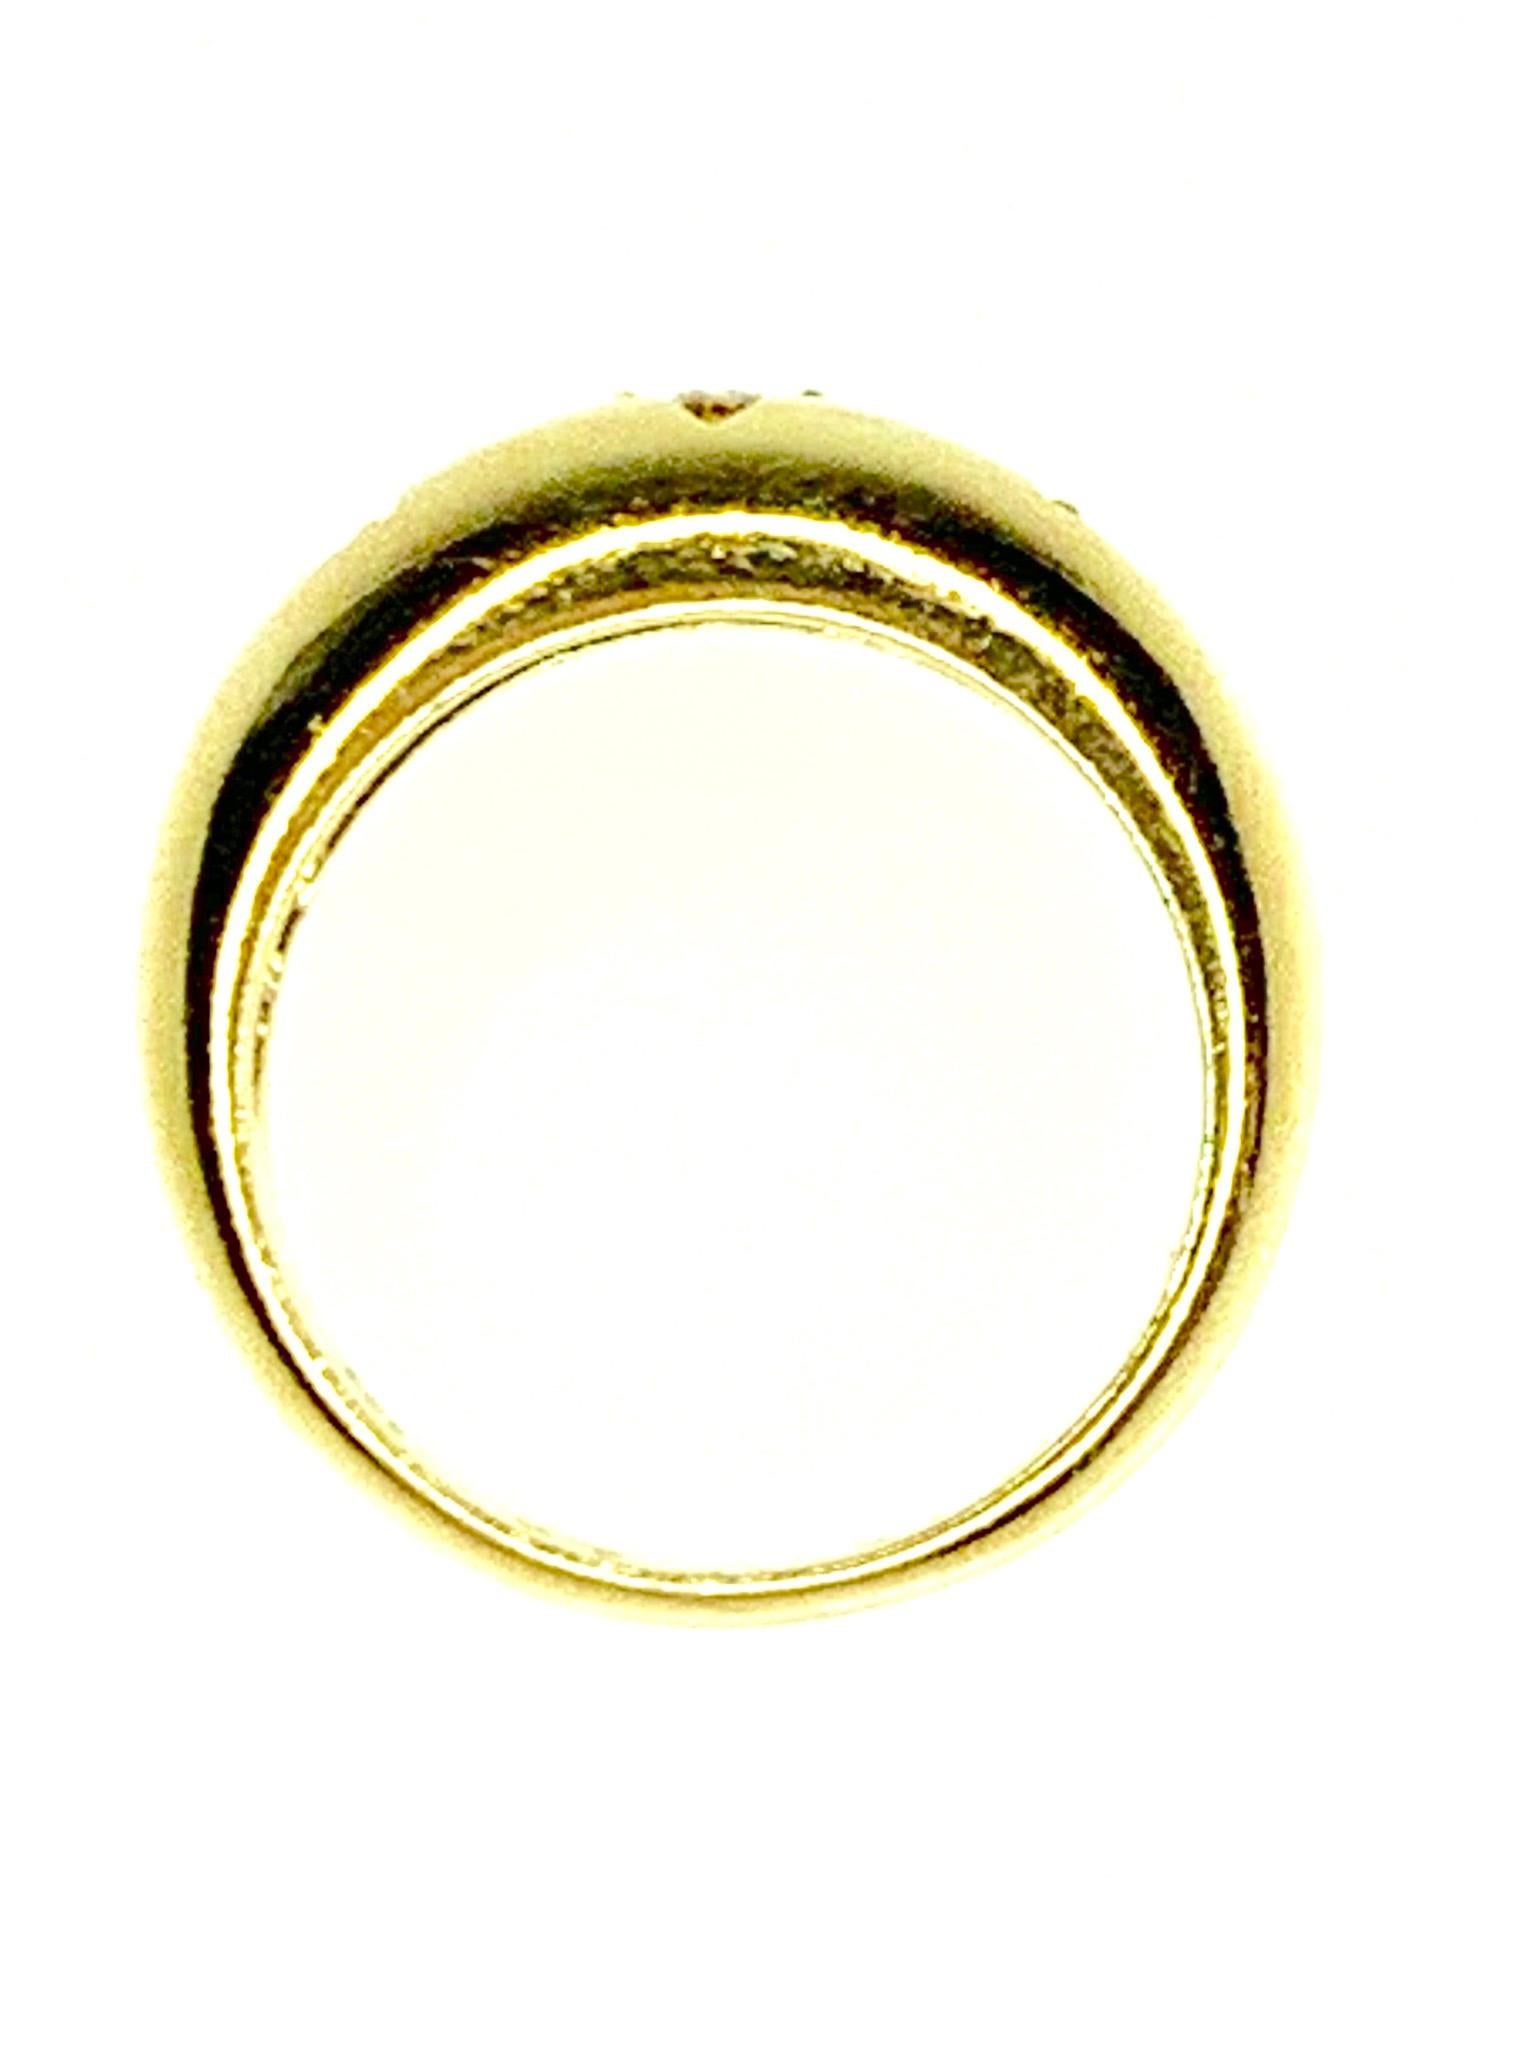 Modern Gemolithos Diamond Ring in 18 Karat Yellow Gold